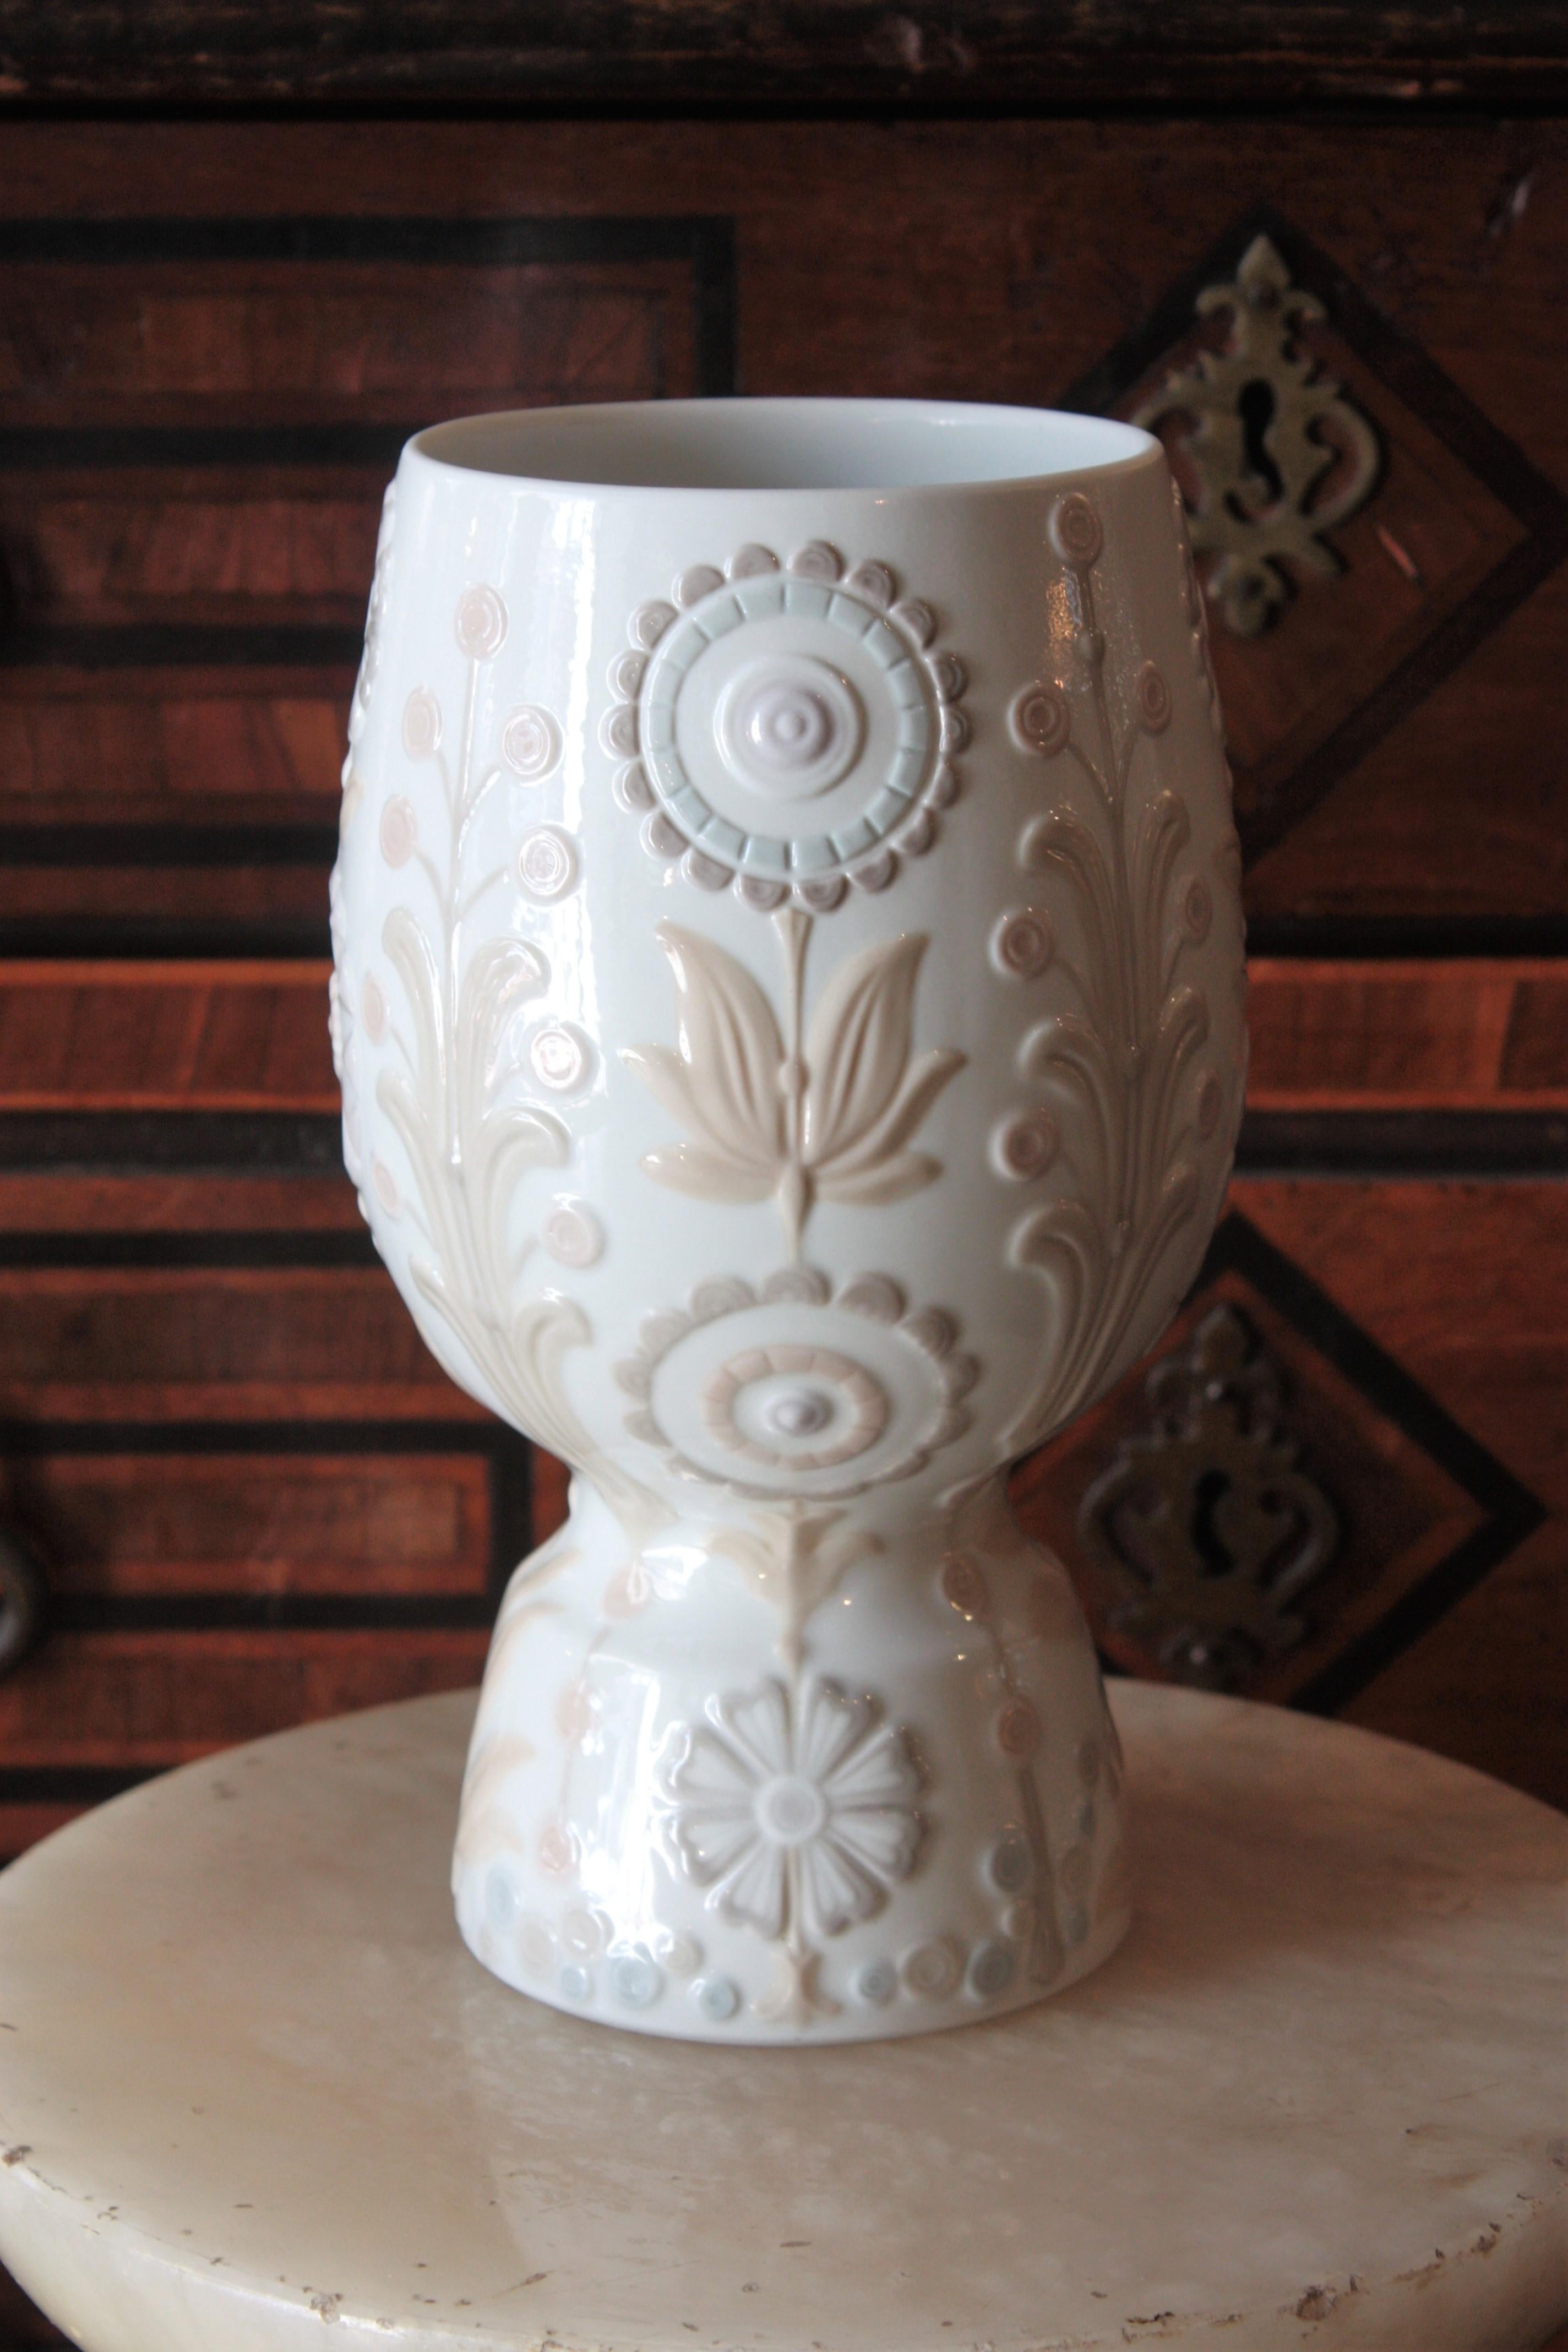 Magnifique vase floral en porcelaine conçu par Julio Fernández et fabriqué par Lladró. Espagne, années 1970.
Cet élégant vase en porcelaine émaillée présente un design épuré avec des décorations florales et de feuillage dans des couleurs